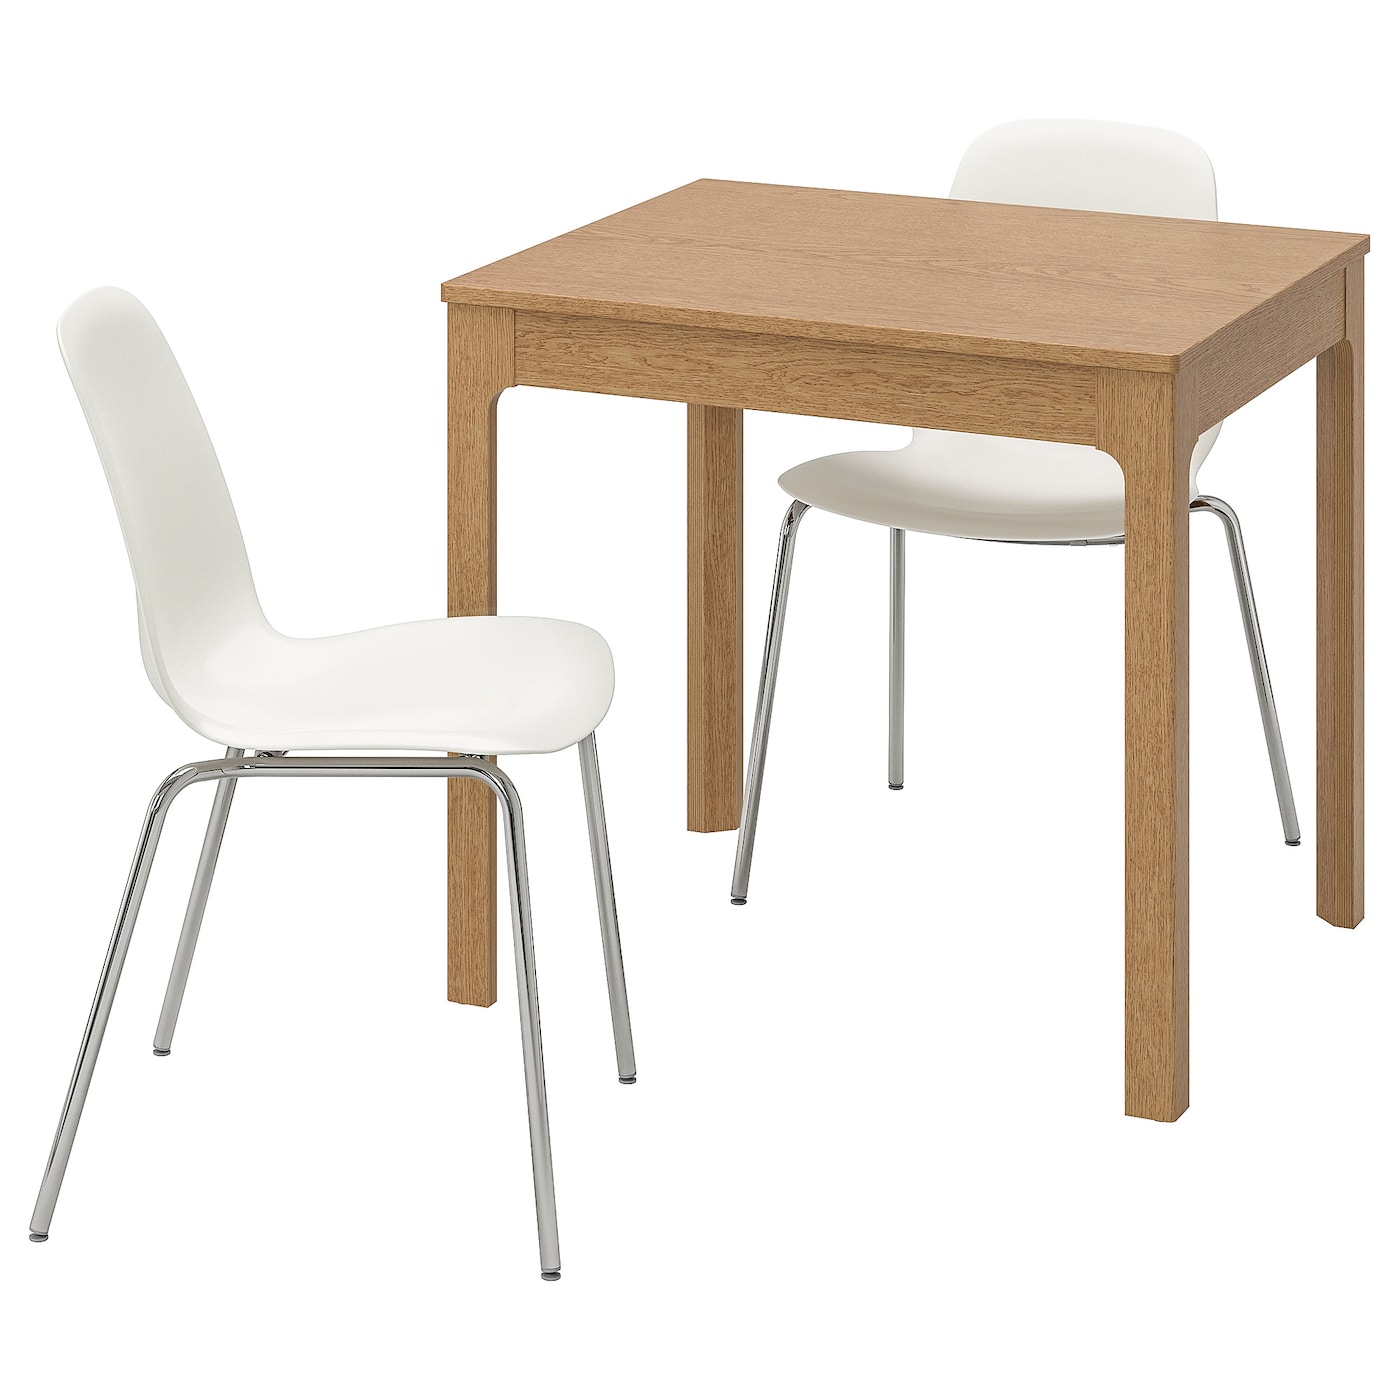 EKEDALEN / LEIFARNE Tisch und 2 Stühle  - Essplatzgruppe - Möbel Ideen für dein Zuhause von Home Trends. Möbel Trends von Social Media Influencer für dein Skandi Zuhause.